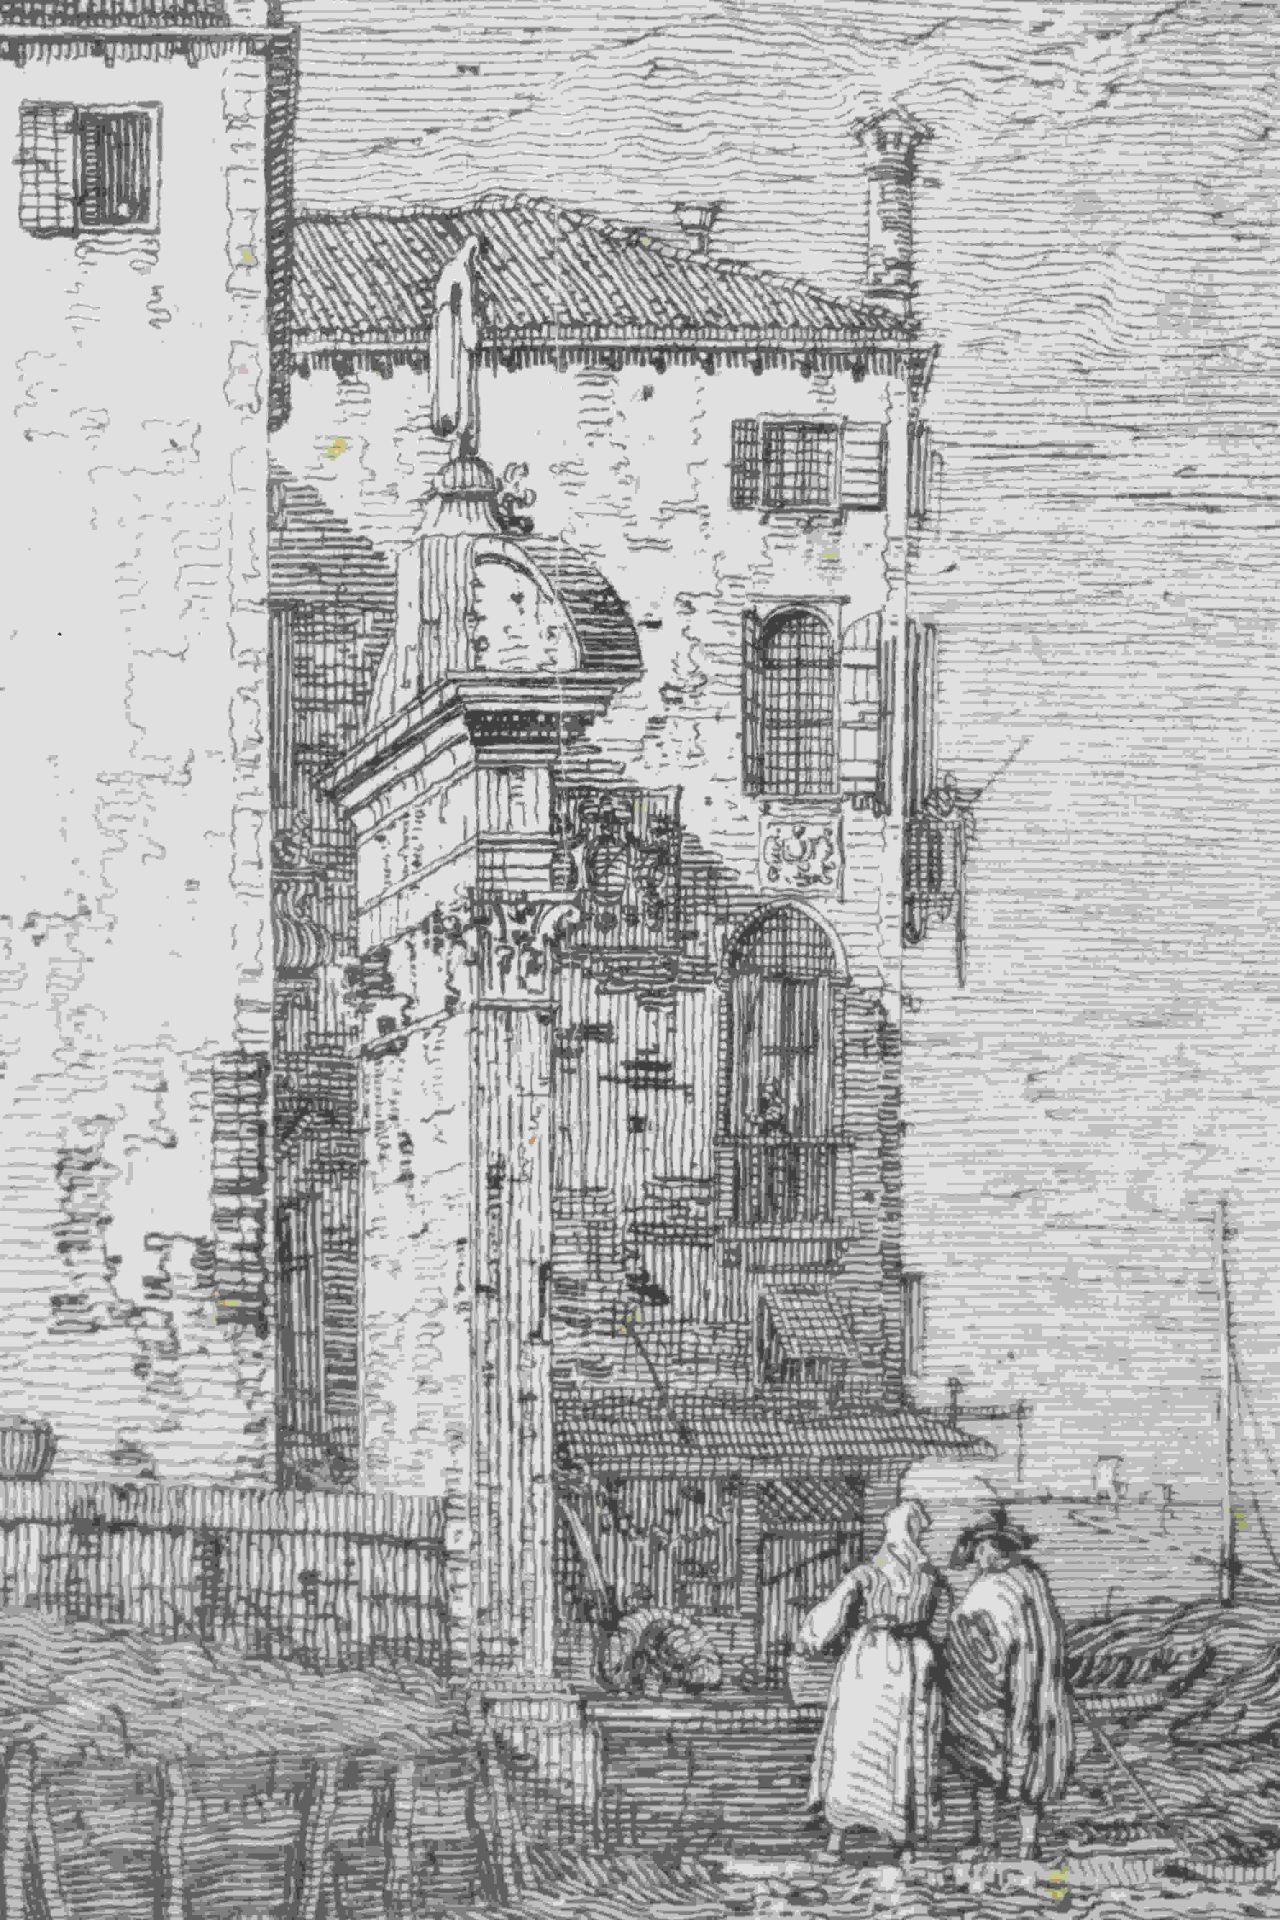 Canal, Giovanni Antonio, gen. Canaletto: Il portico con la lanterna - Image 2 of 24